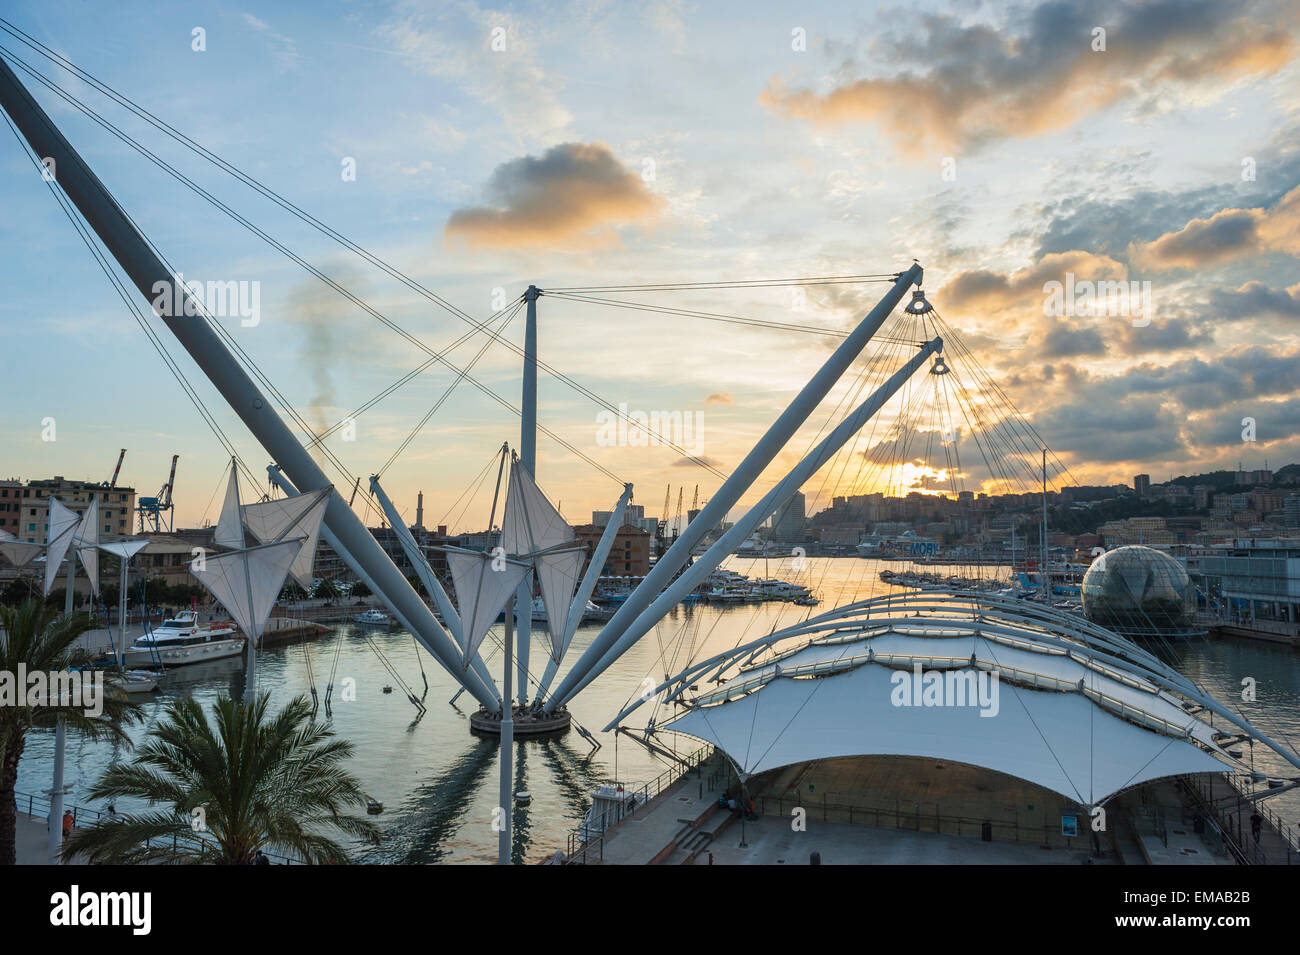 Le port de Gênes, le port de Gênes, avec ses deux attractions conçu Renzo Piano - Il Bigo et la biosphère, Ligurie, Italie. Banque D'Images